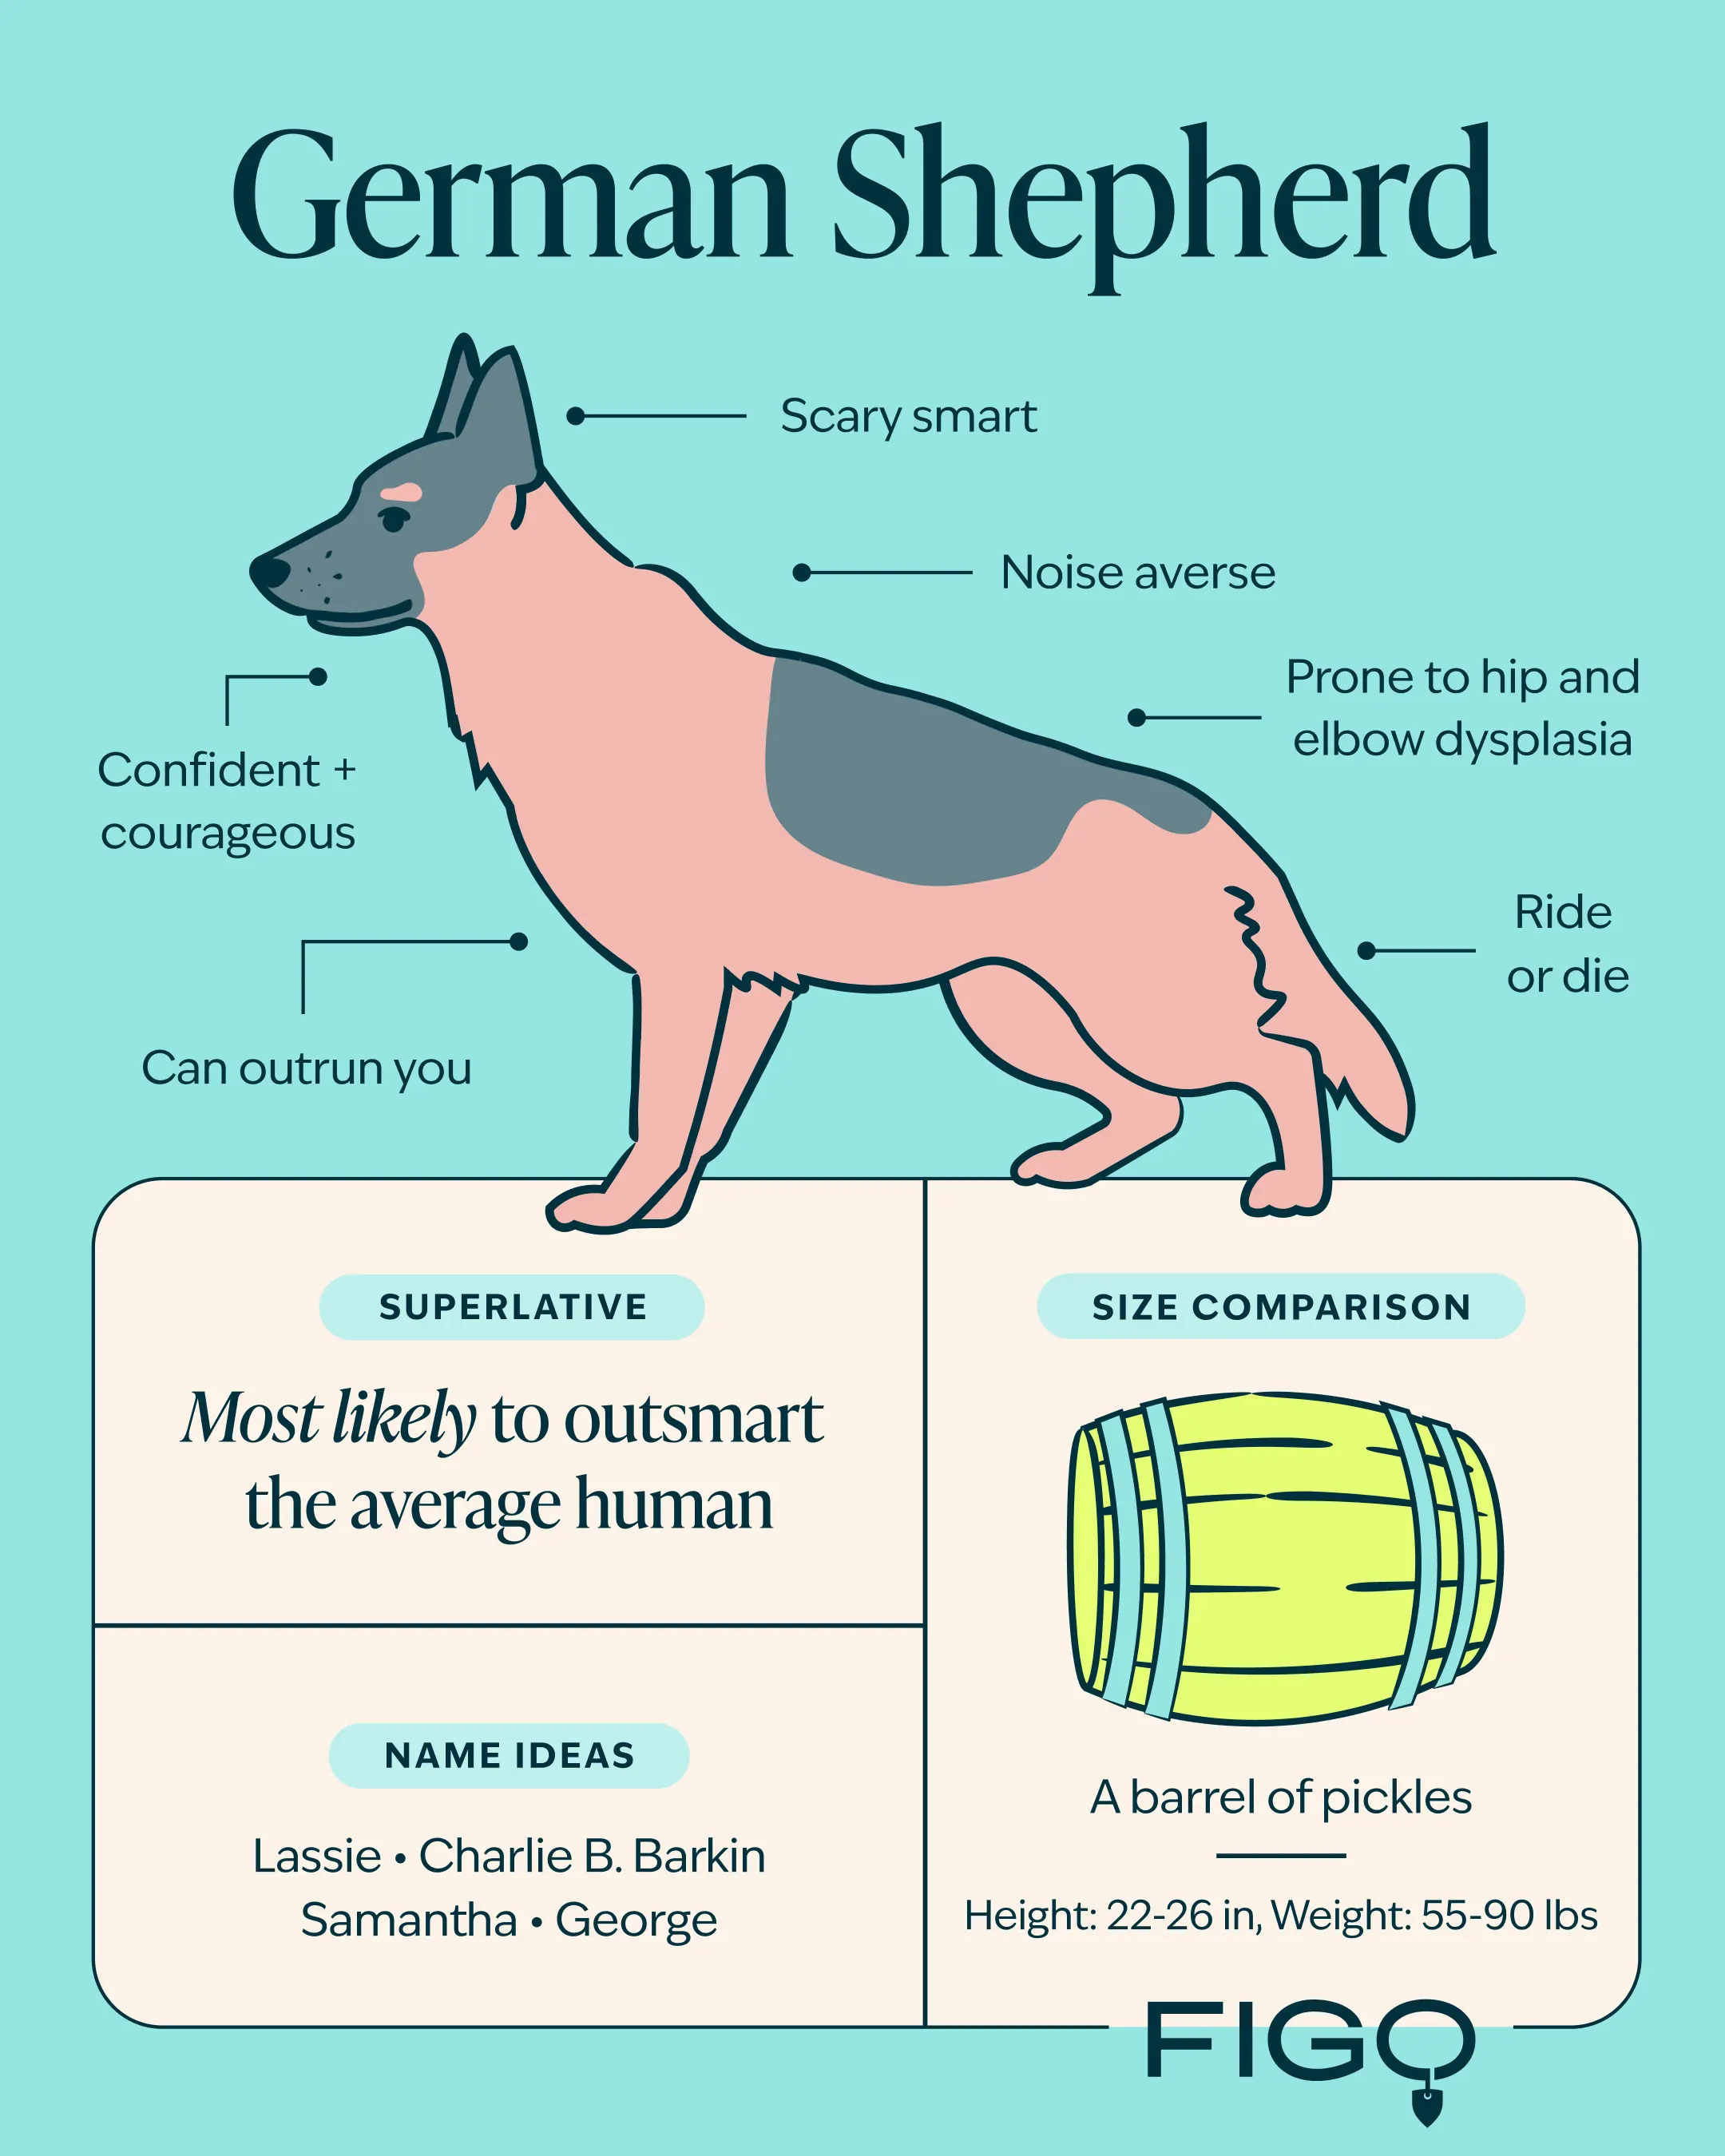 German Shepherd Breed Guide